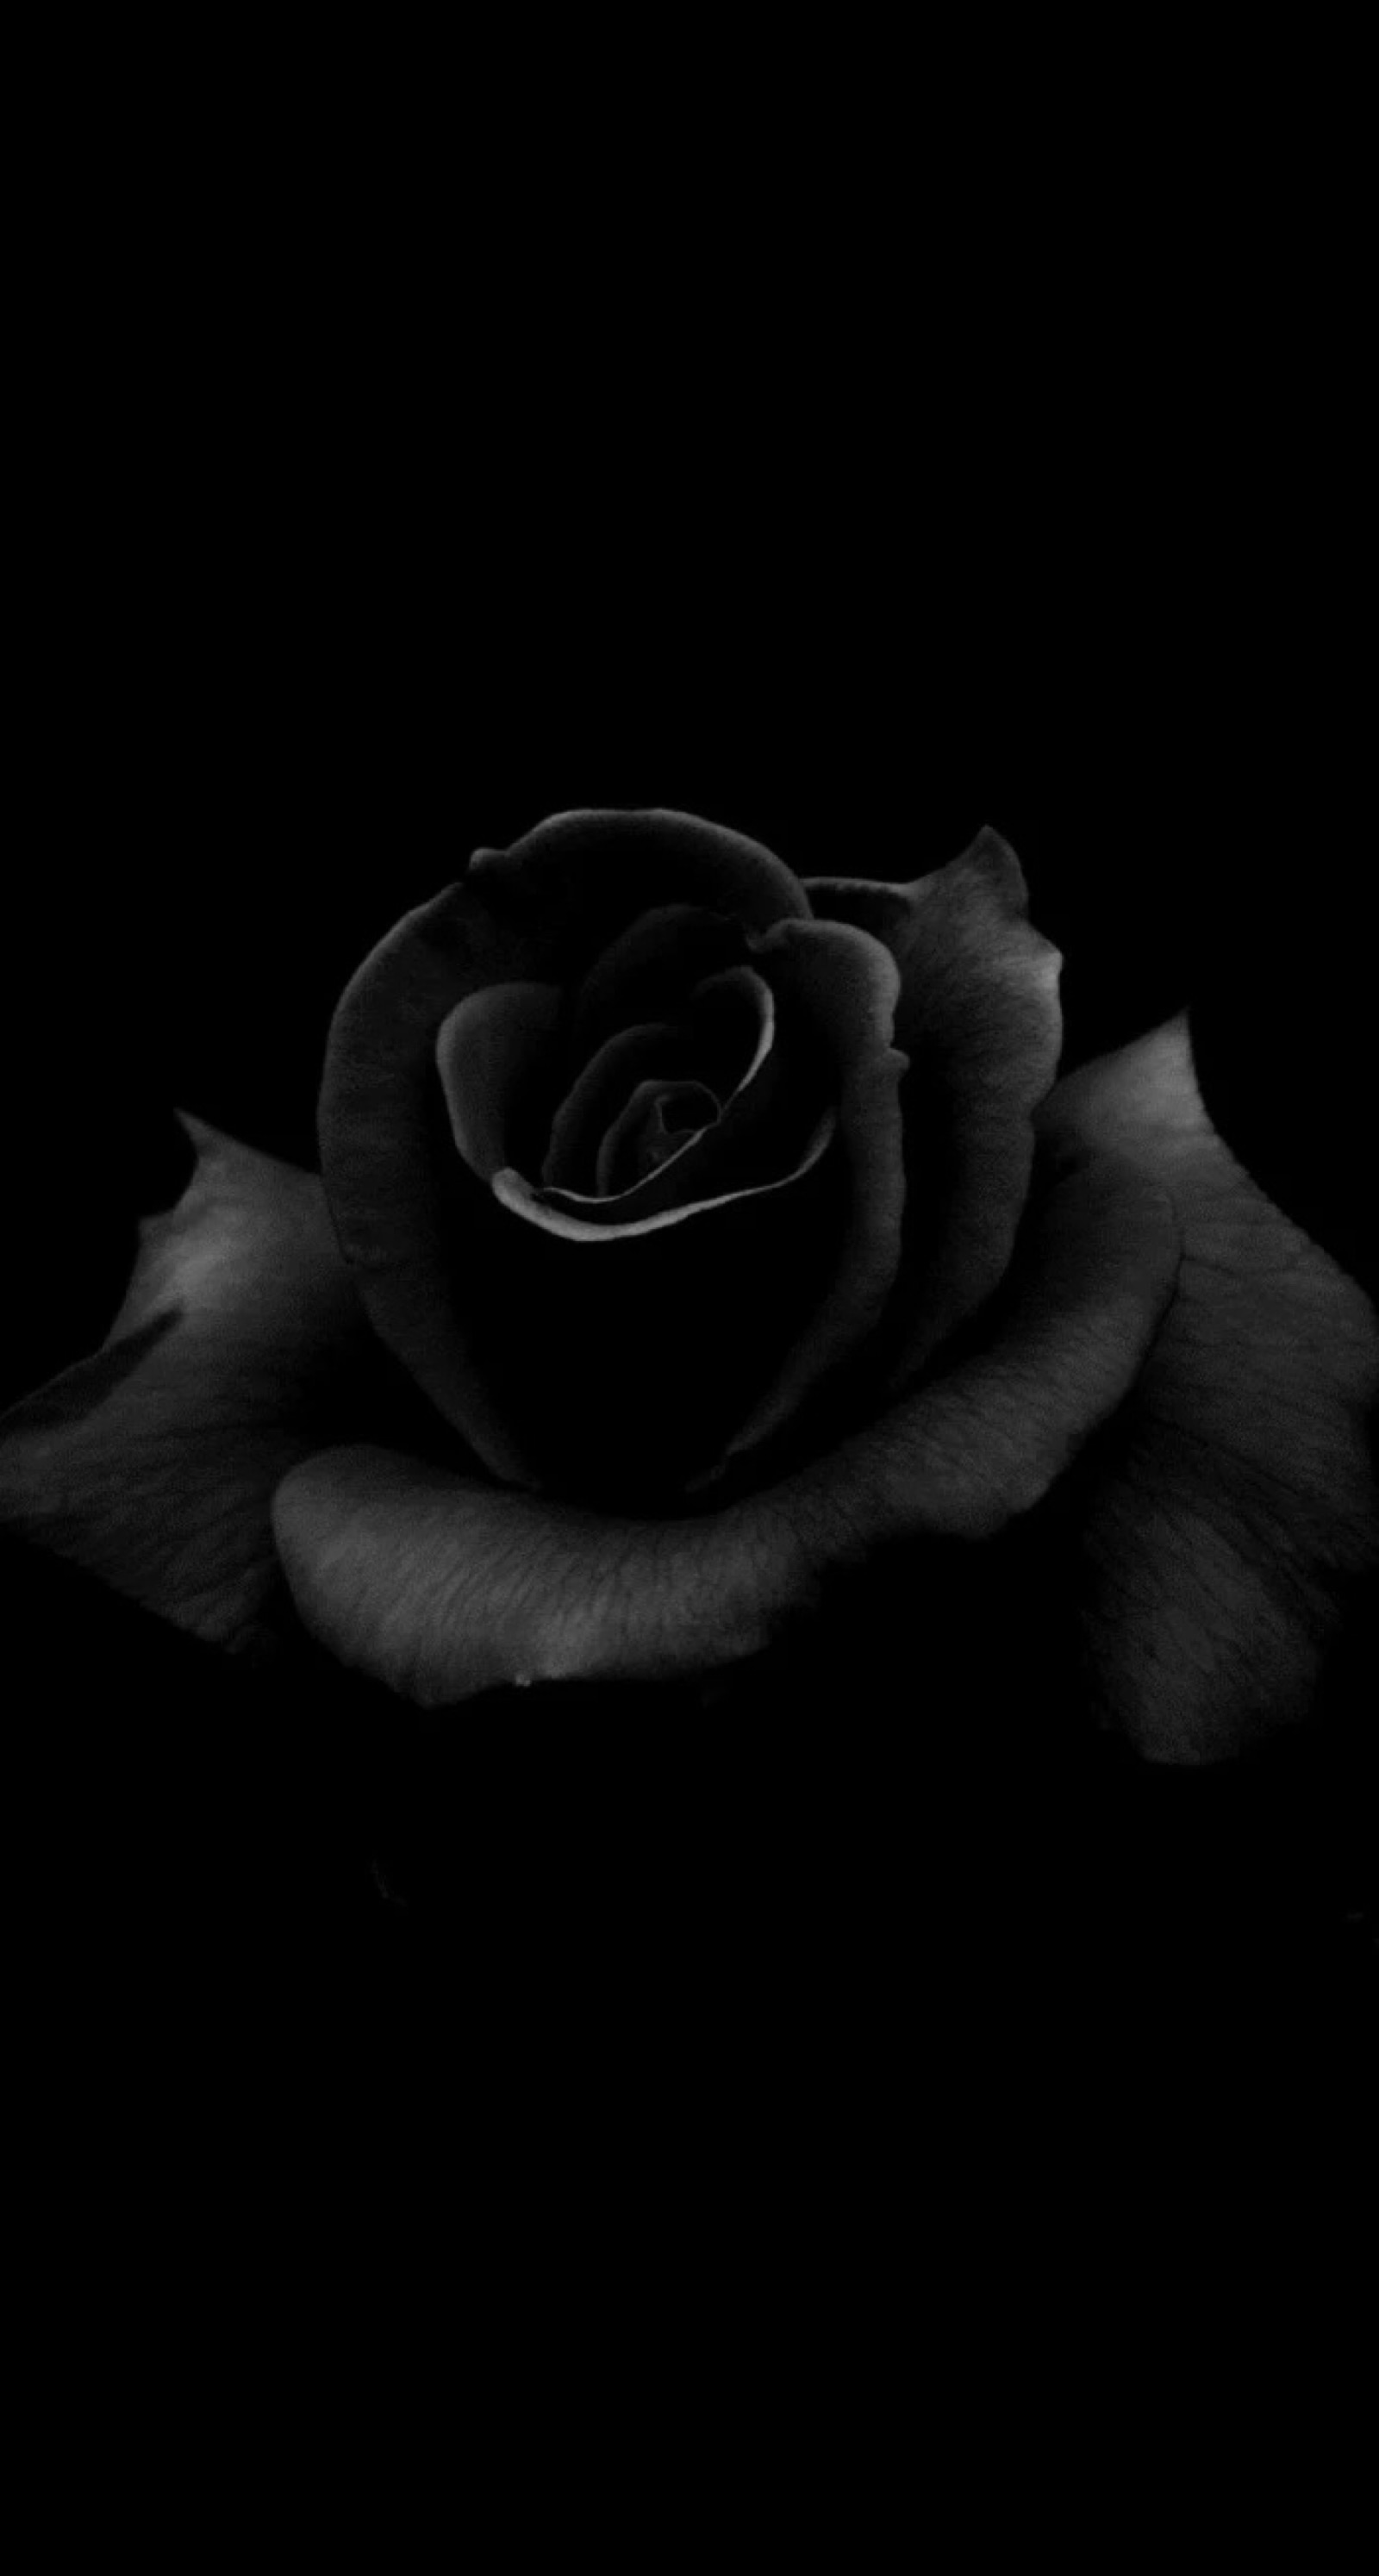 超过 600 张关于“黑玫瑰”和“玫瑰”的免费图片 - Pixabay